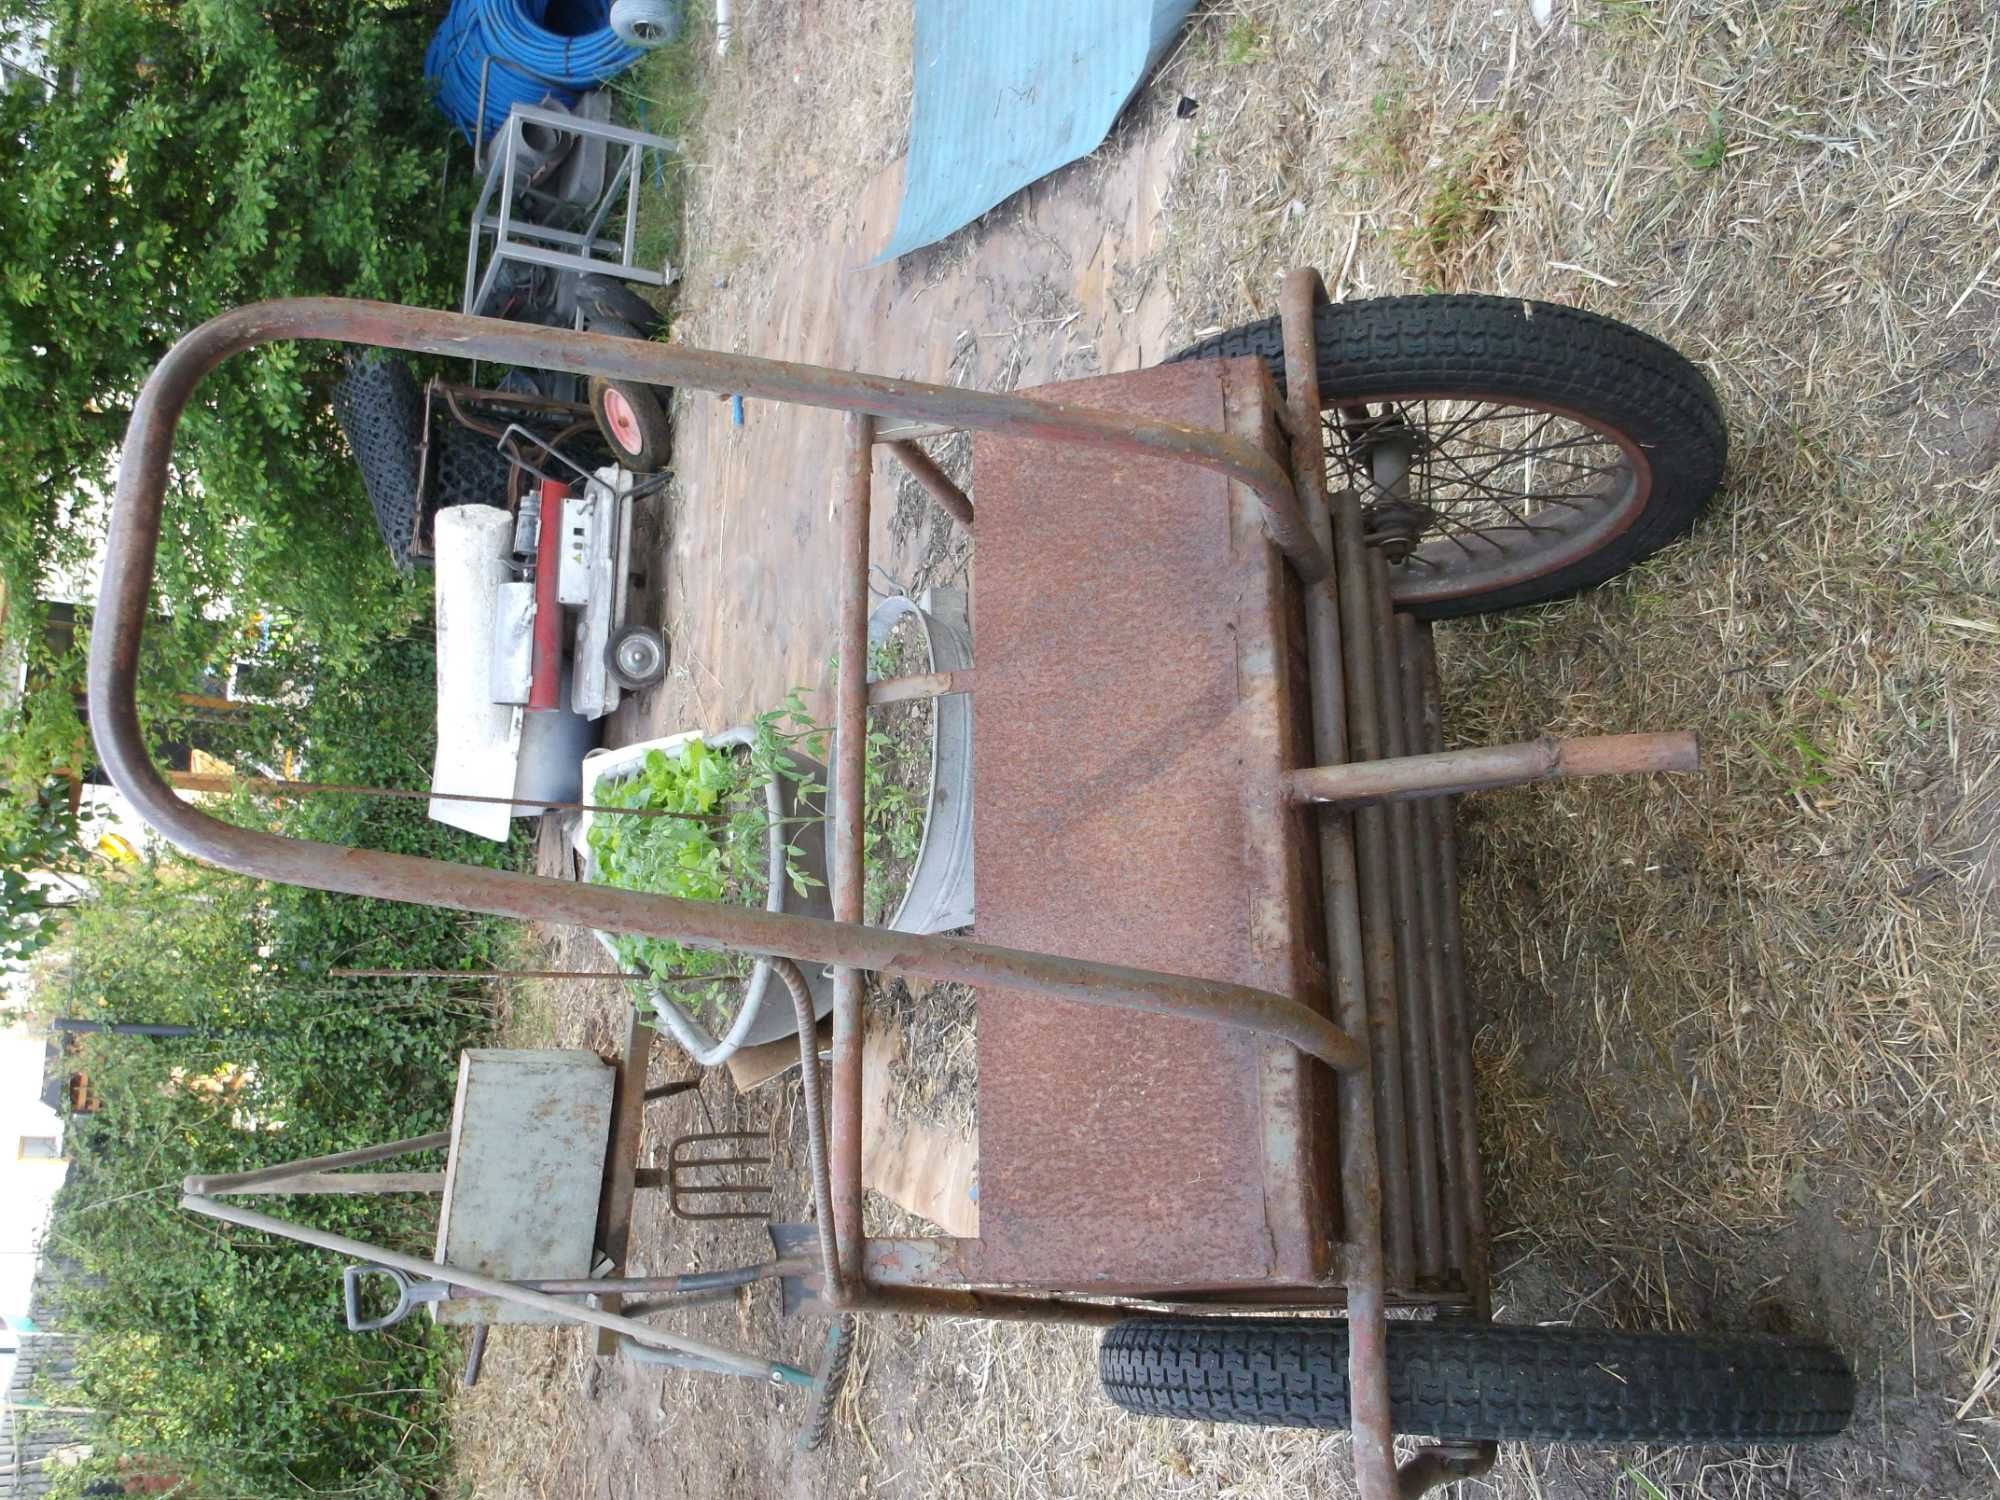 wózek  przydomowy dwu-kołowy z epoki prlu